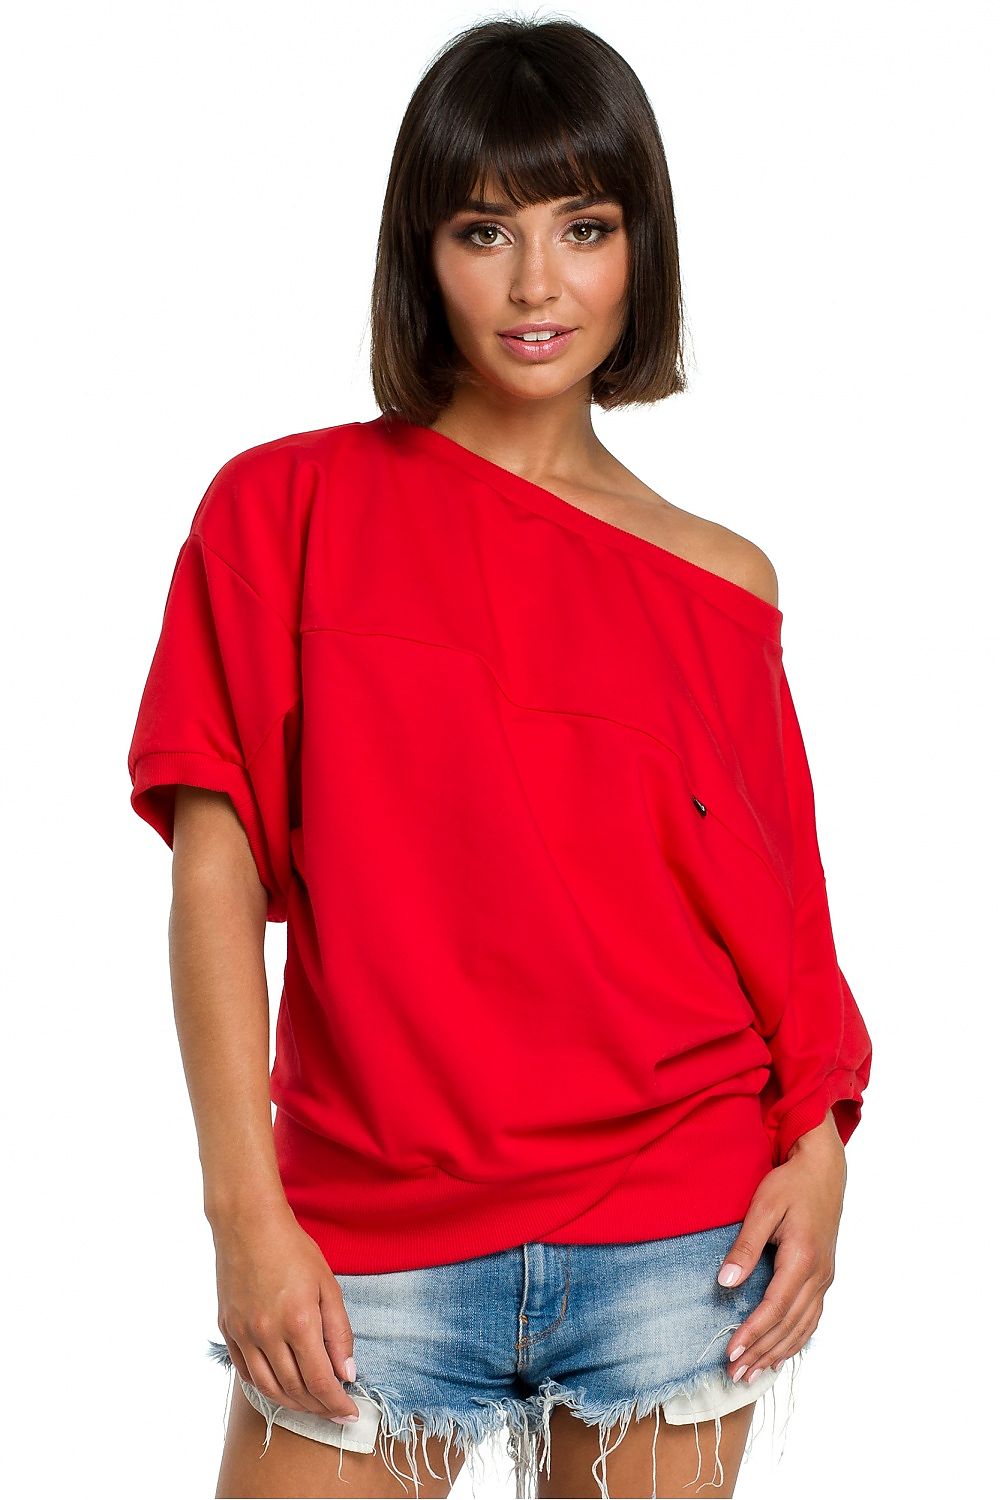 TEEK - Sweatshirt Red/Orange TOPS theteekdotcom 2XL/3XL  